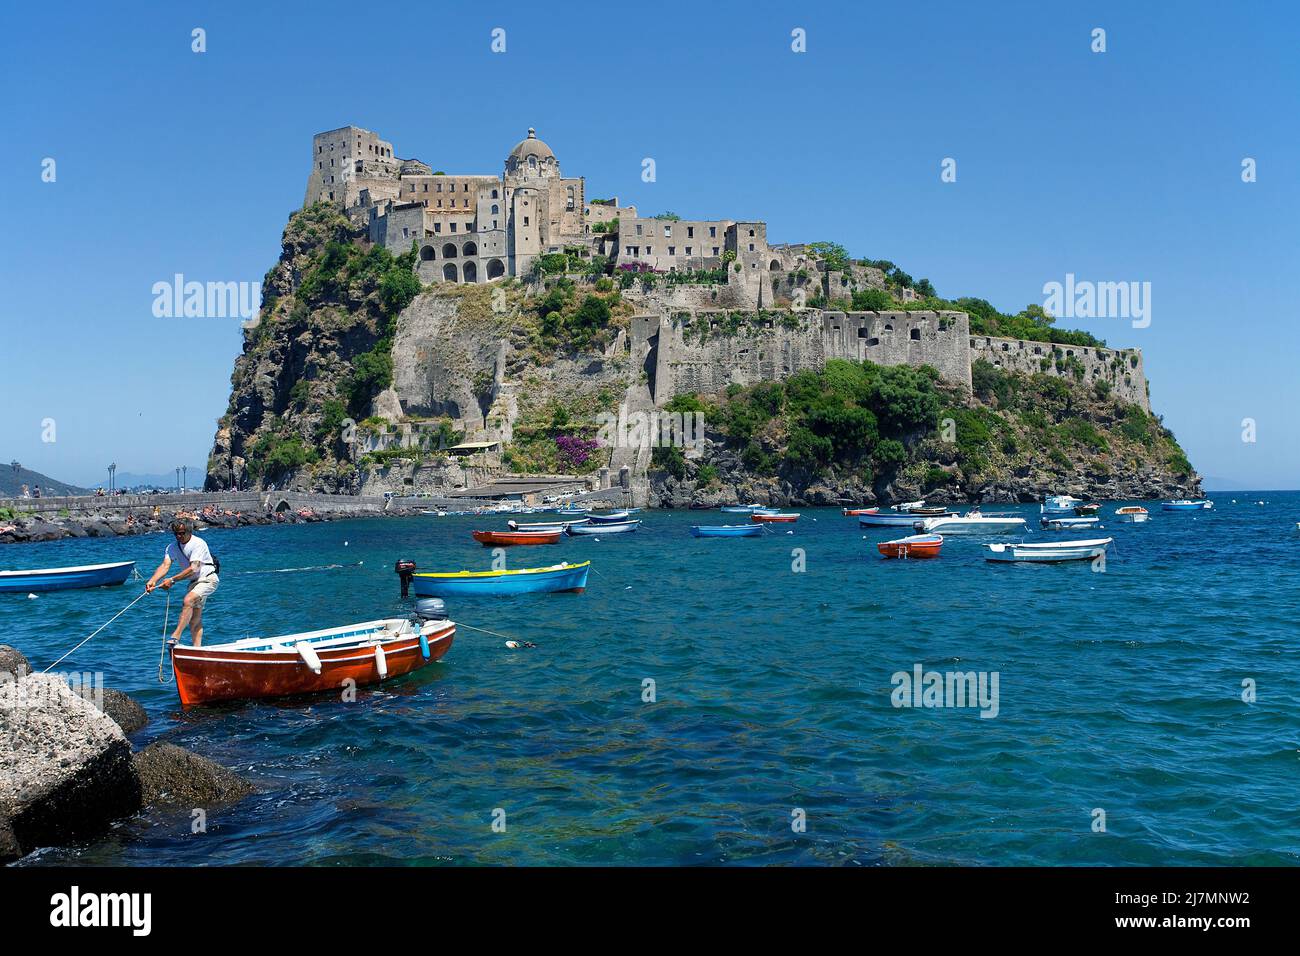 Bateaux de pêche au Castello Aragonese sur l'île d'Ischia, Italie, mer Tyrrhénienne, mer Méditerranée Banque D'Images